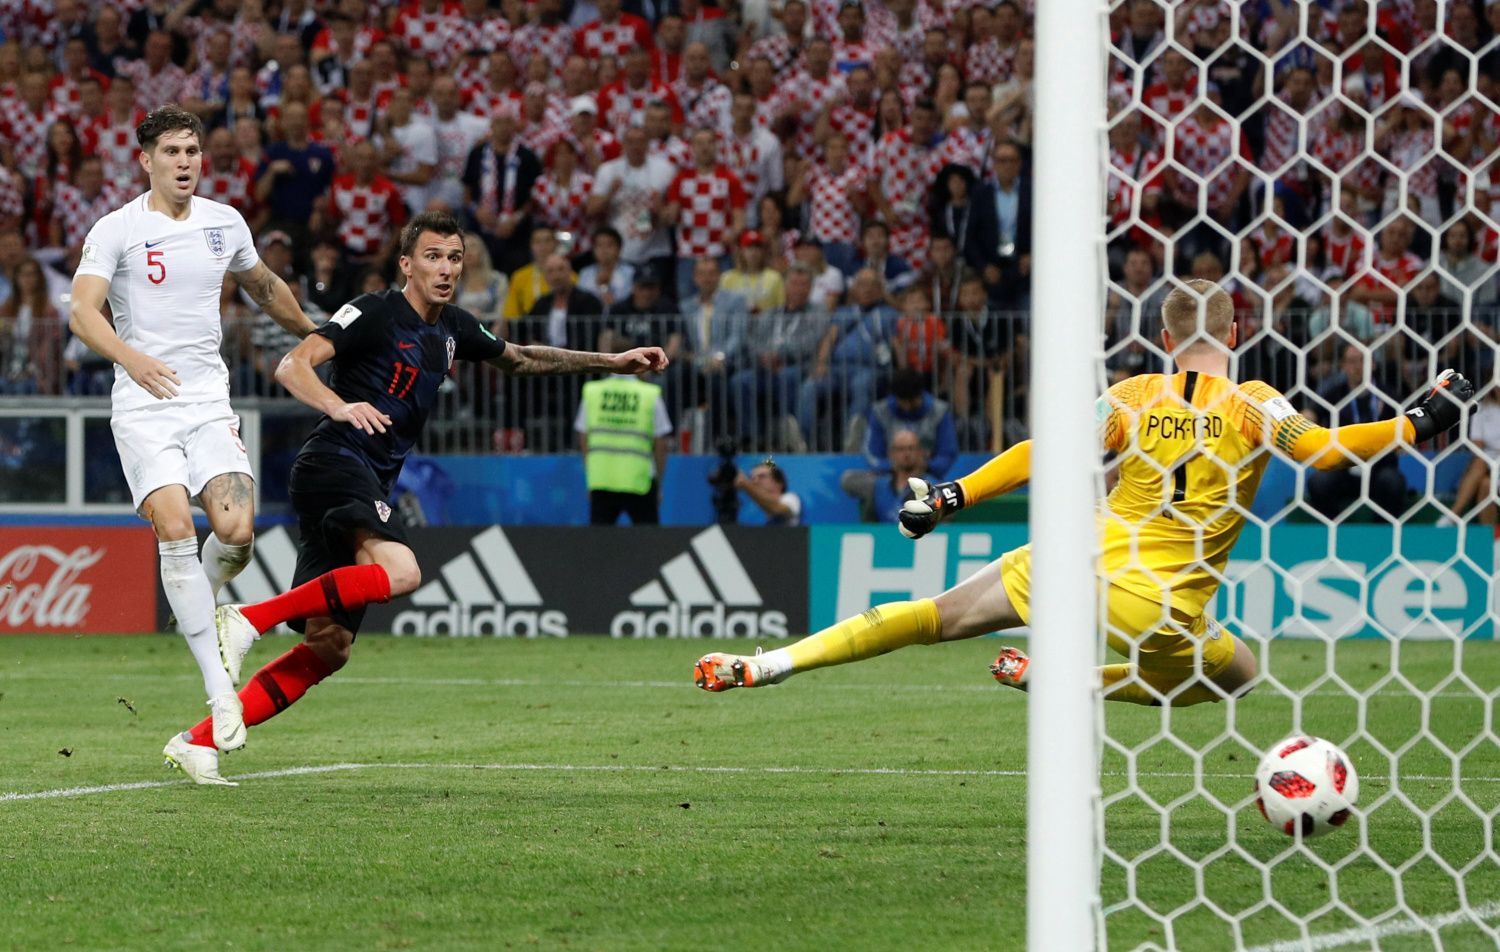 Mario Mandžukič dává gól v semifinále MS 2018 Chorvatsko - Anglie